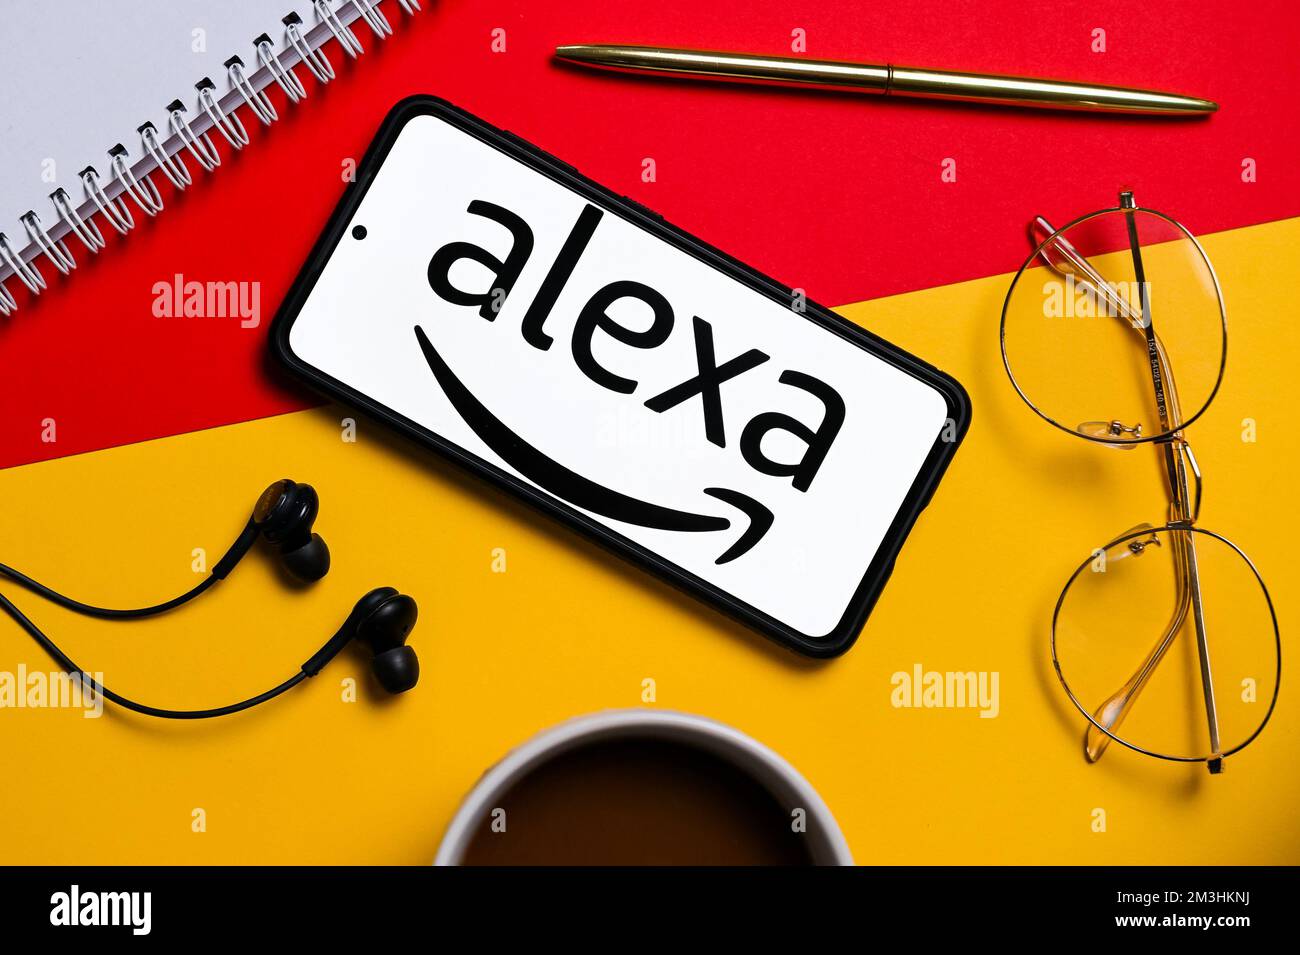 581 Alexa Logo Images, Stock Photos, 3D objects, & Vectors